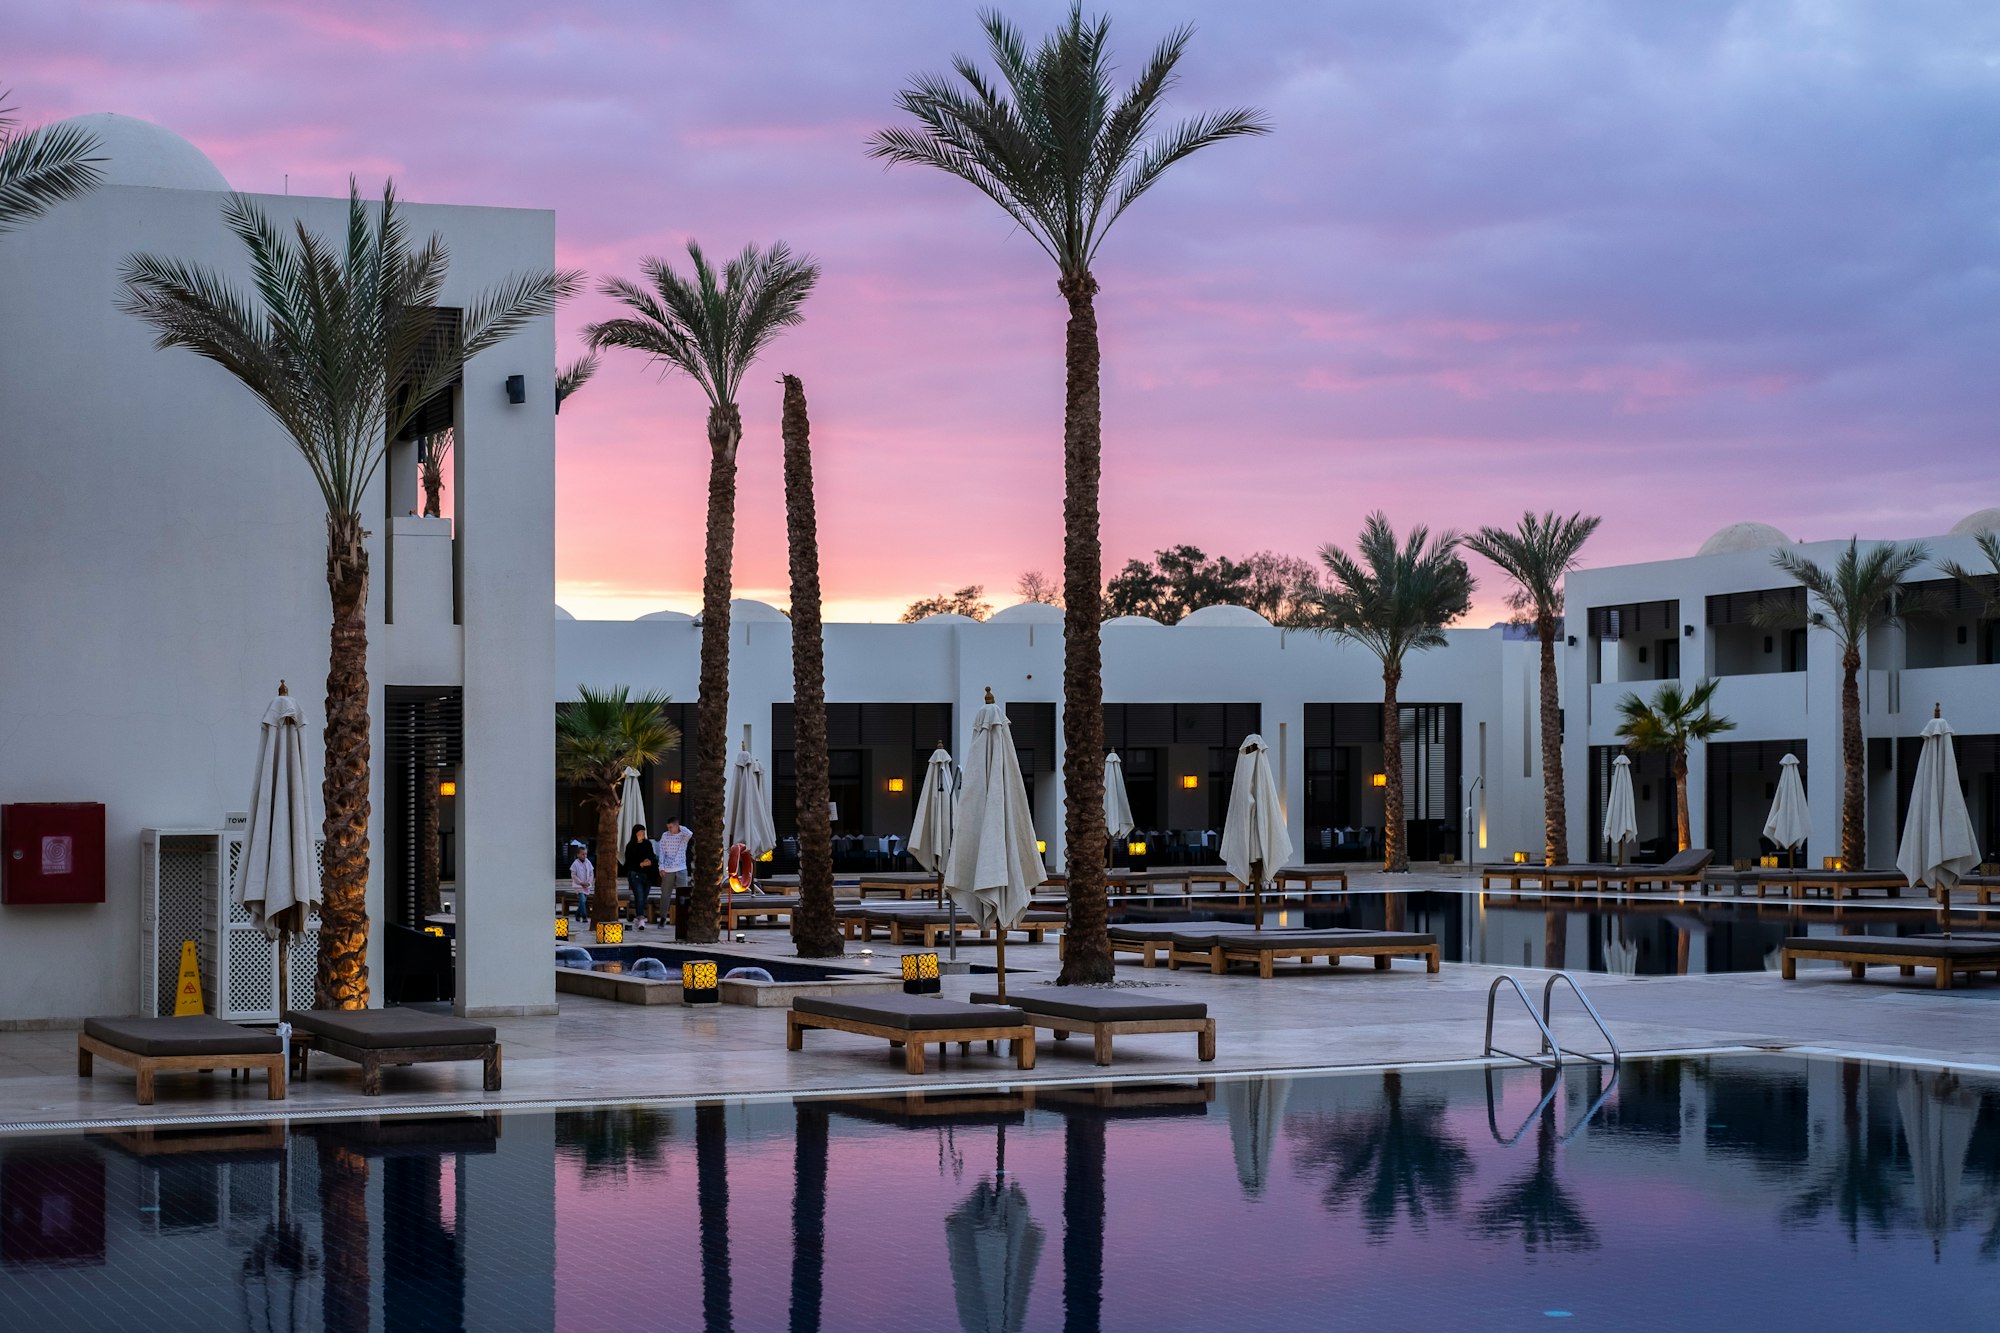 Hotel sales start in Cancun